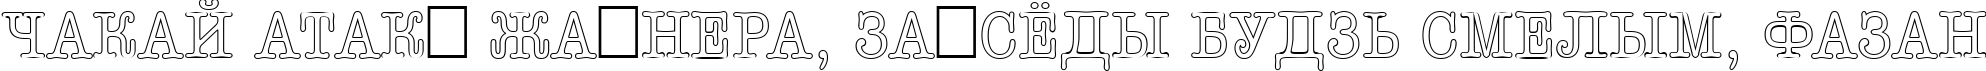 Пример написания шрифтом a_OldTyperTitulNrOtl текста на белорусском